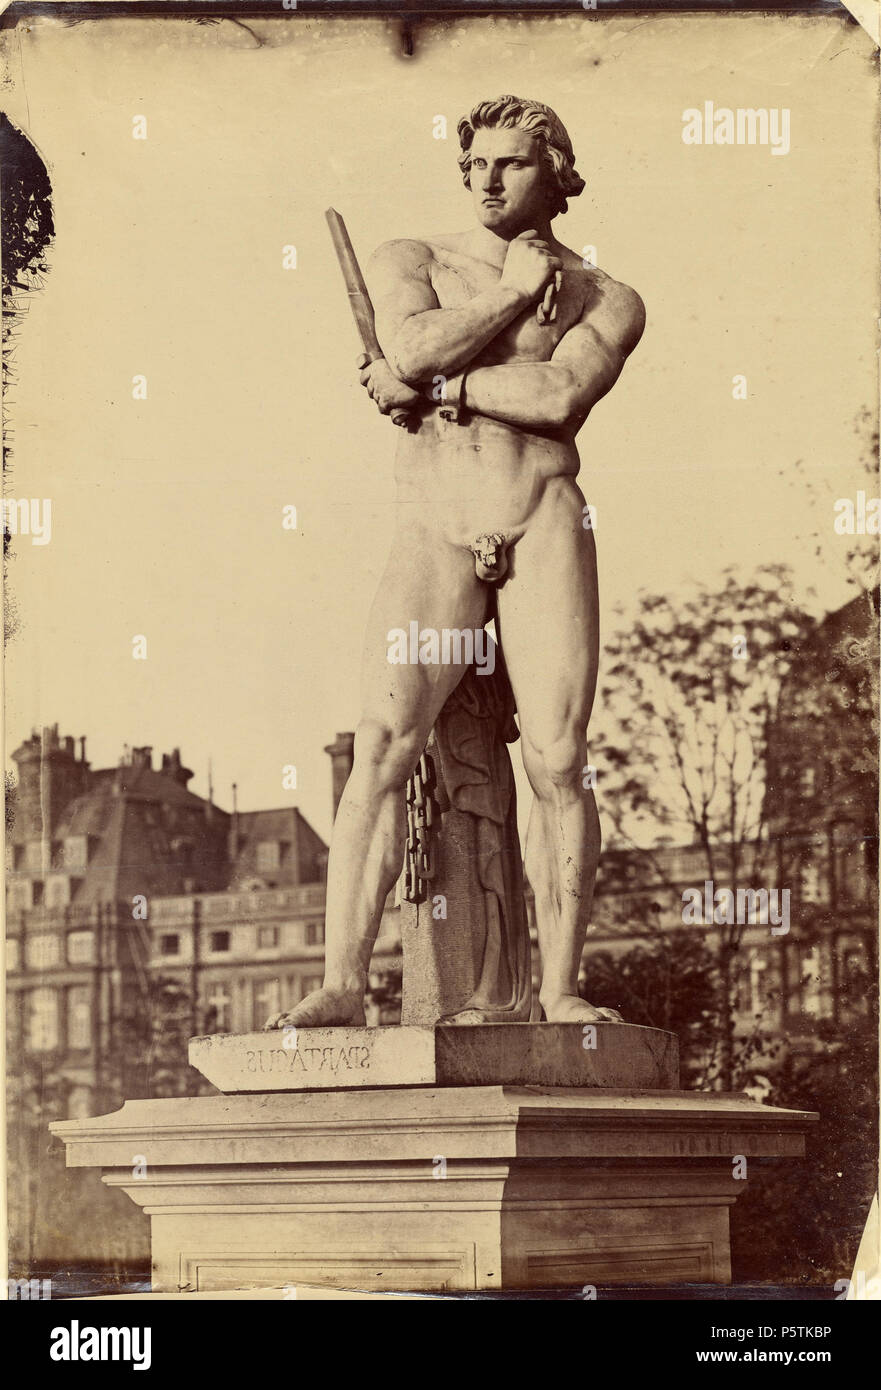 [Spartacus, Jardin des Tuileries, Paris]; Charles Nègre (Französisch, 1820 - 1880); Paris, Frankreich; Juni 1859; Eiklar Silber drucken; 41,9 x 28,3 cm (16 1/2 x 11 1/8 in.); 92.XM.43 328 Charles Nègre, Spartacus, Jardin des Tuileries, Paris, Juni 1859 Stockfoto